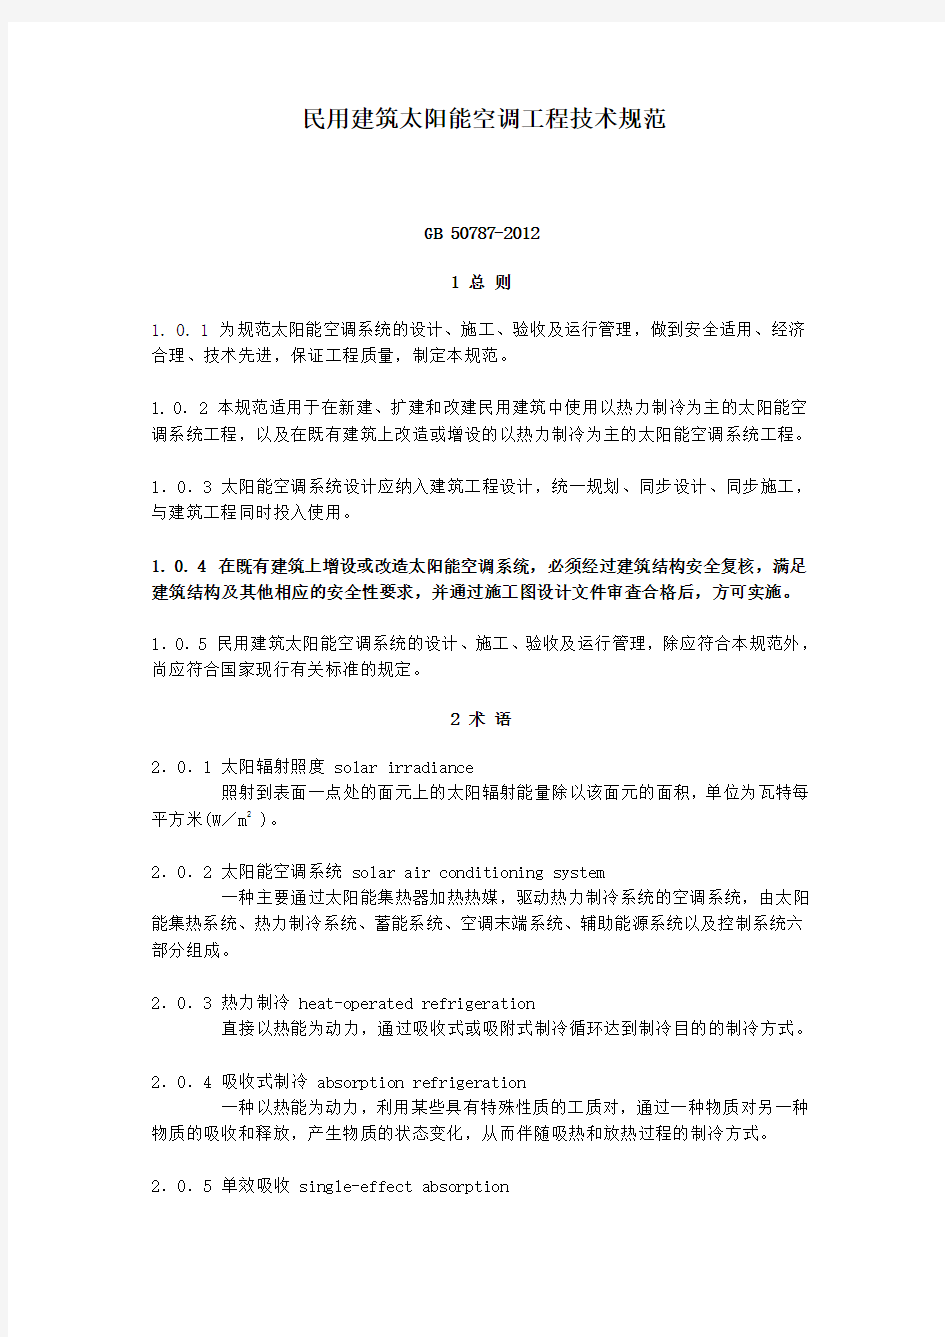 中华人民共和国国家标准GB 50787-2012